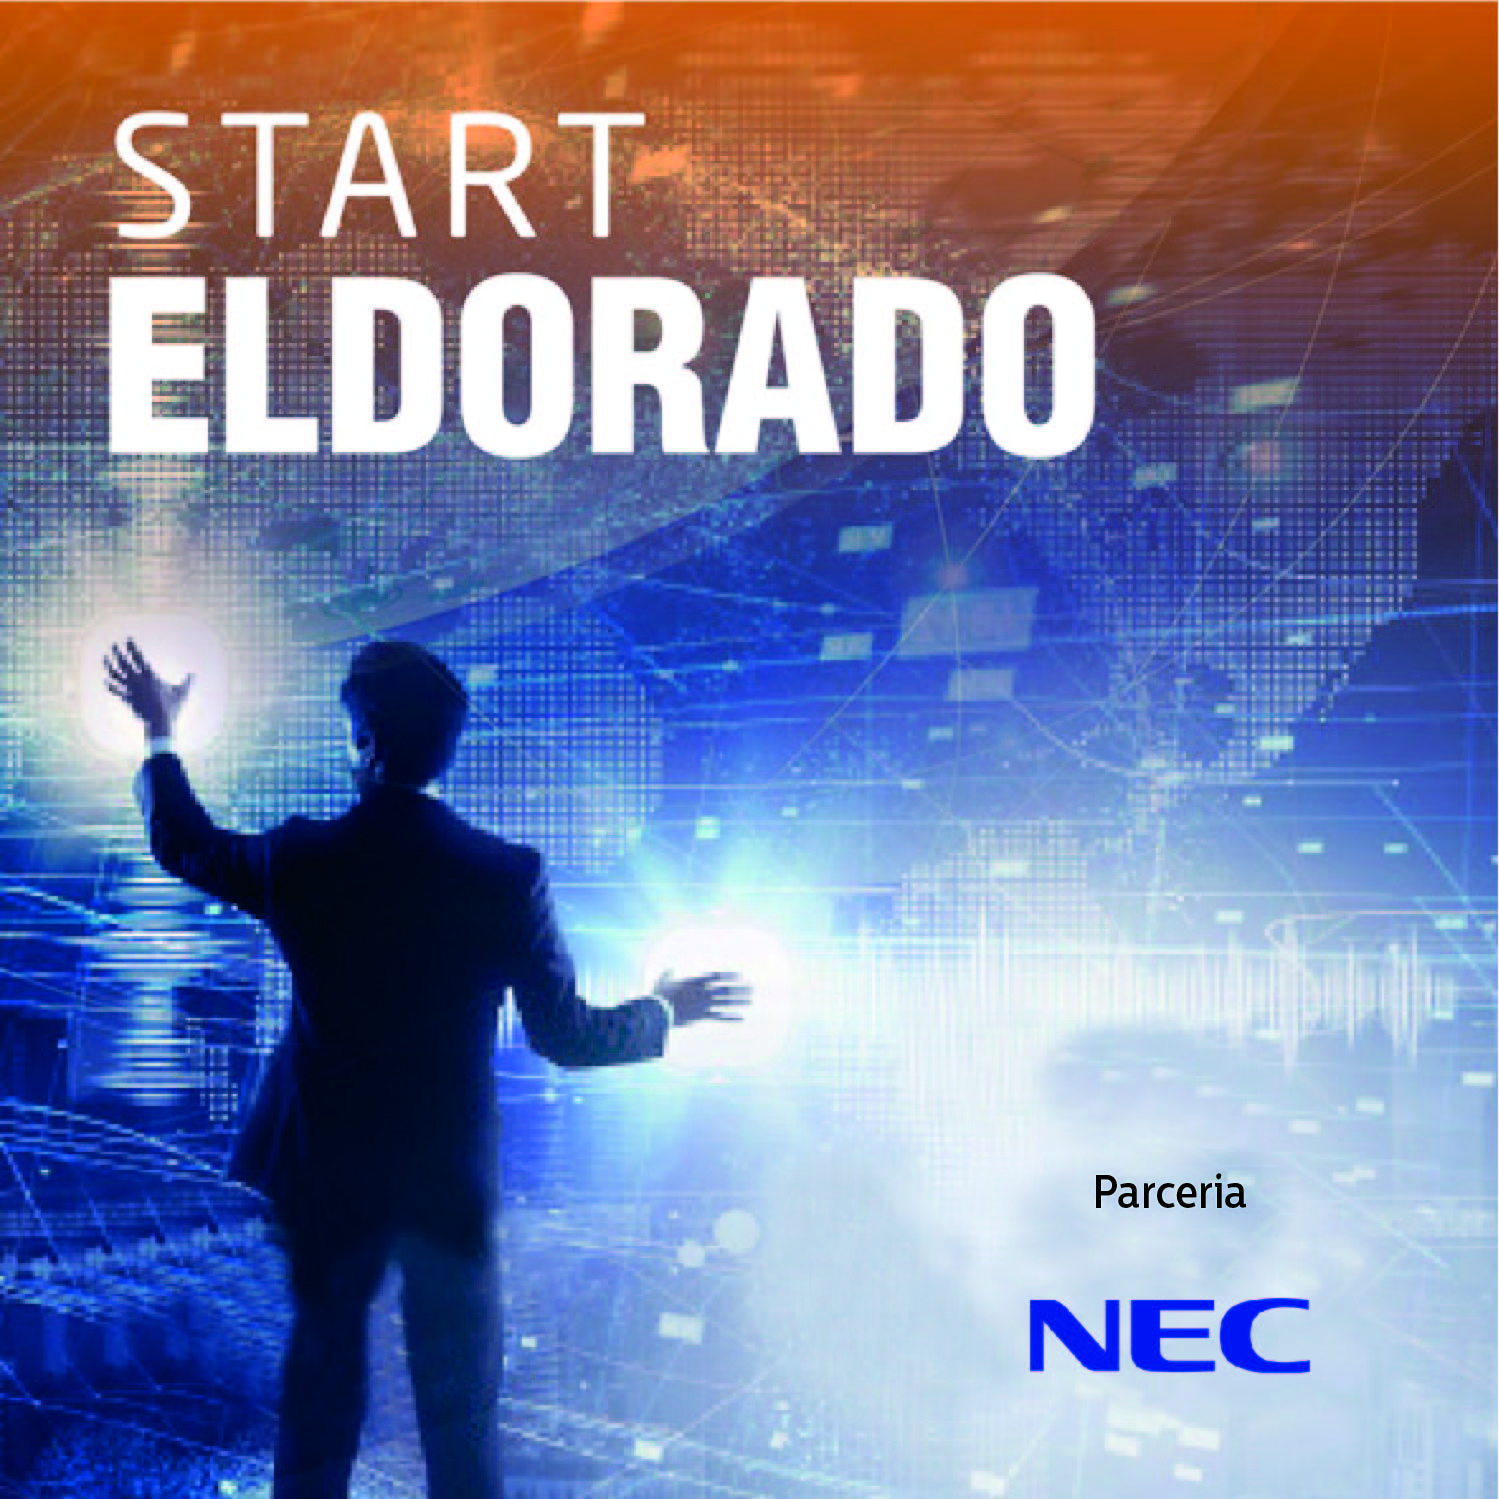 Tecnologia #290: #Start Eldorado: Operadora é parceira da inovação aberta